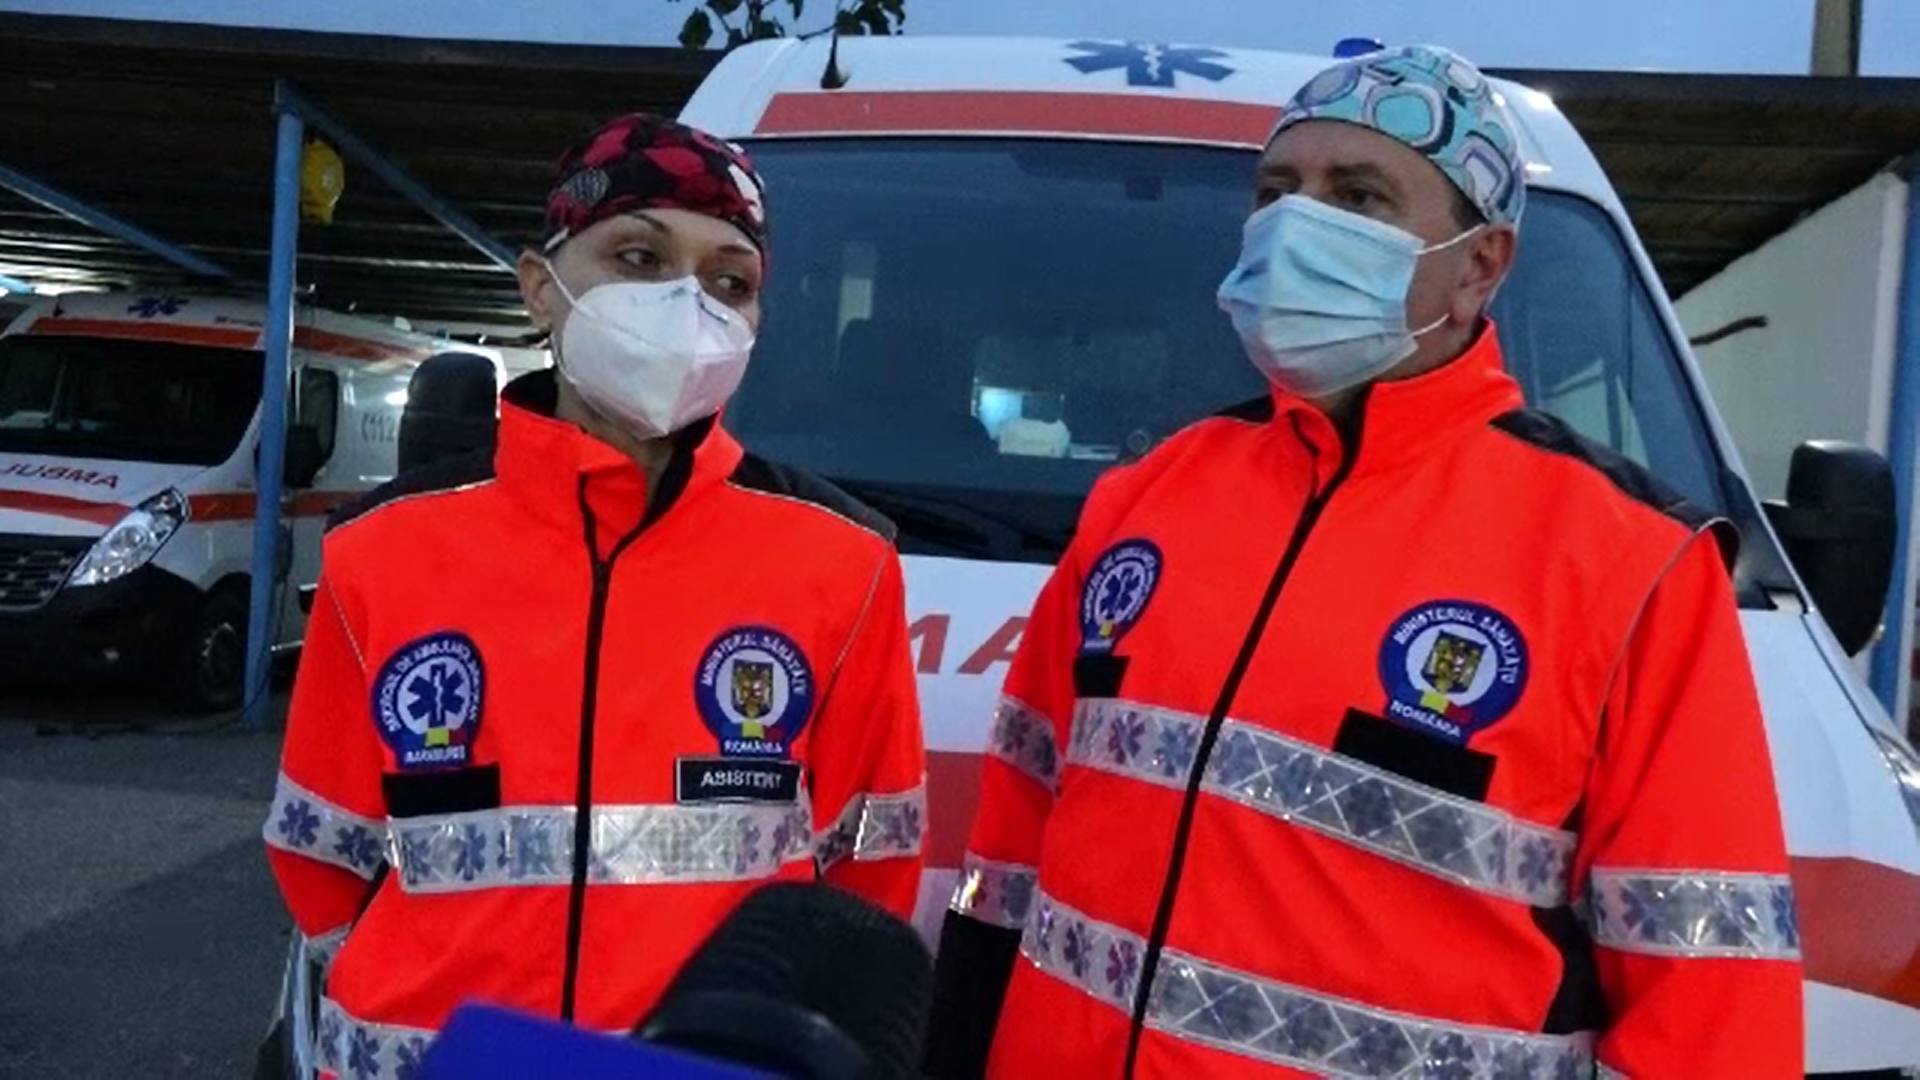 Ambulanța: Numărul angajaților crește cu 1.000, sporul Covid de 25% se acordă de la 1 noiembrie